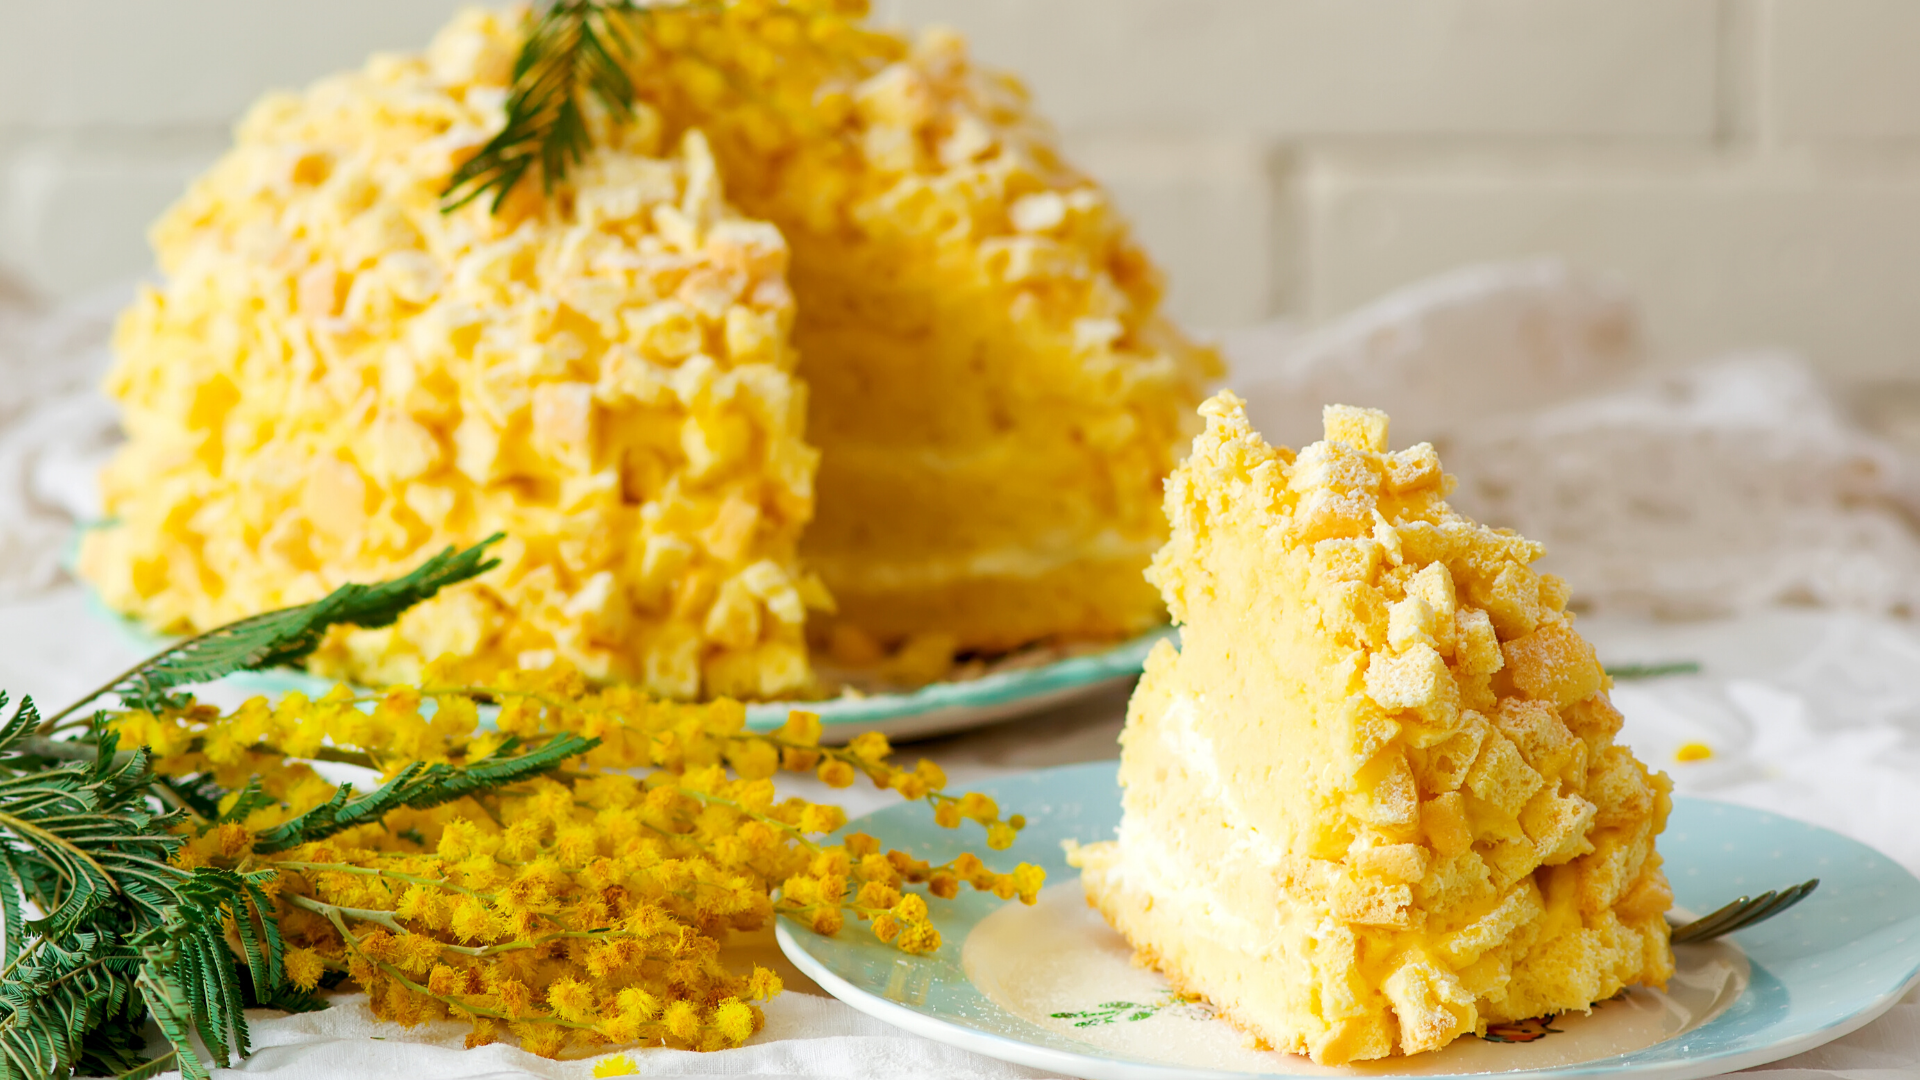 Zanobini pasticceria torta mimosa immagine articolo blog